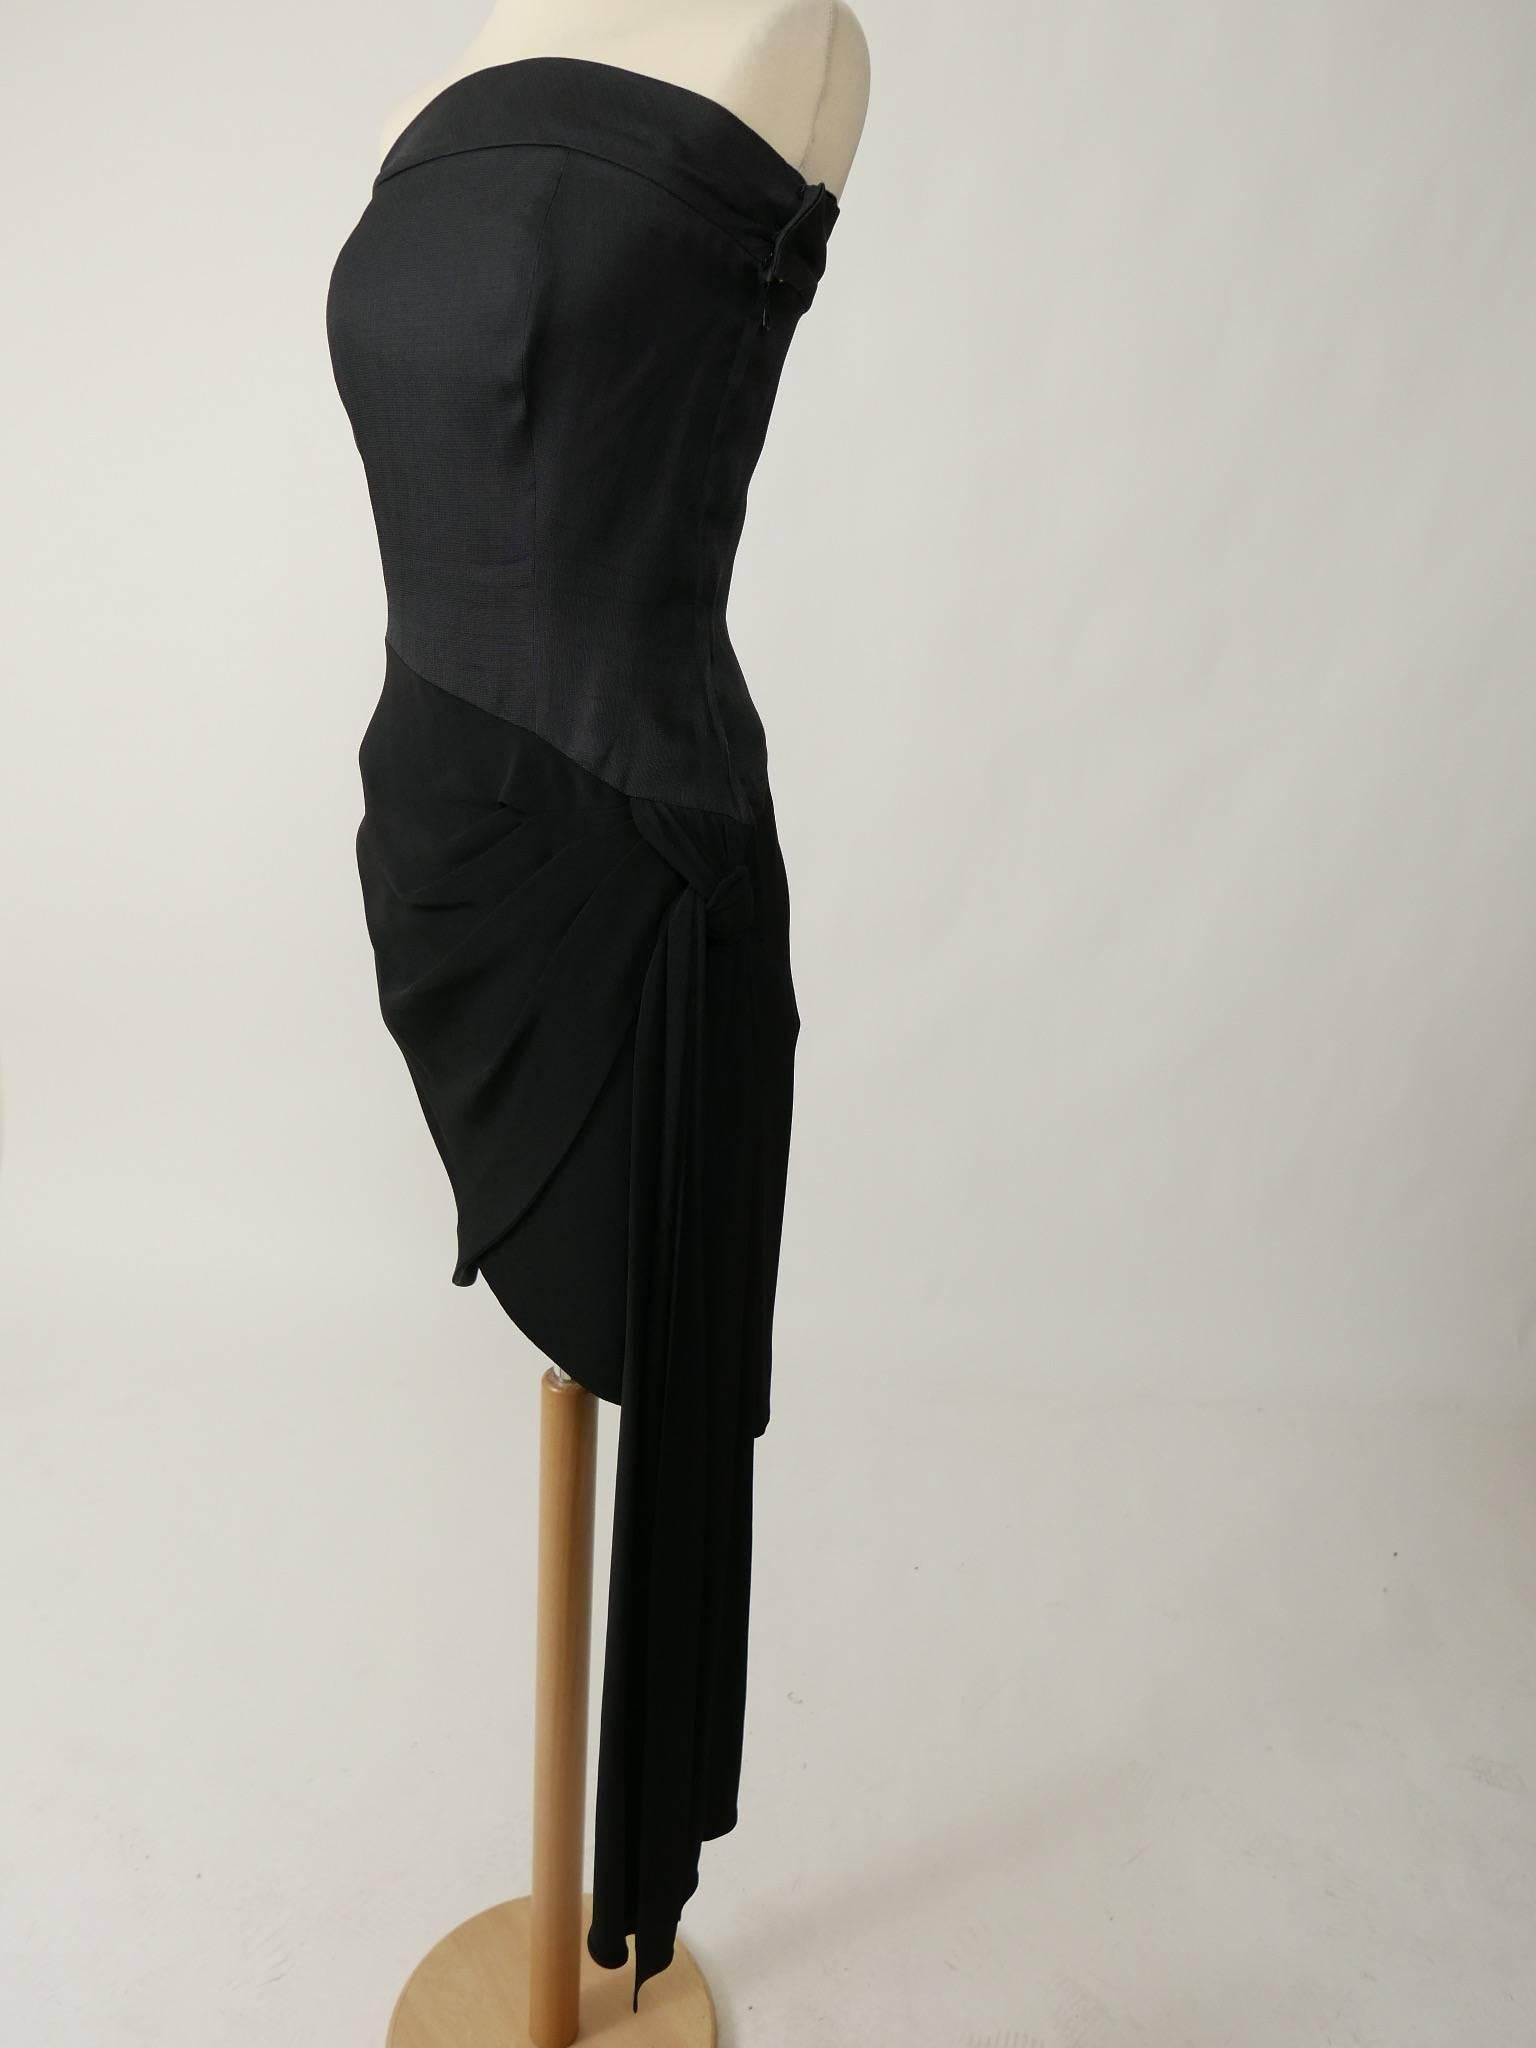 Women's 1980s SAINT LAURENT Rive Gauche Black Strapless Cocktail Dress For Sale